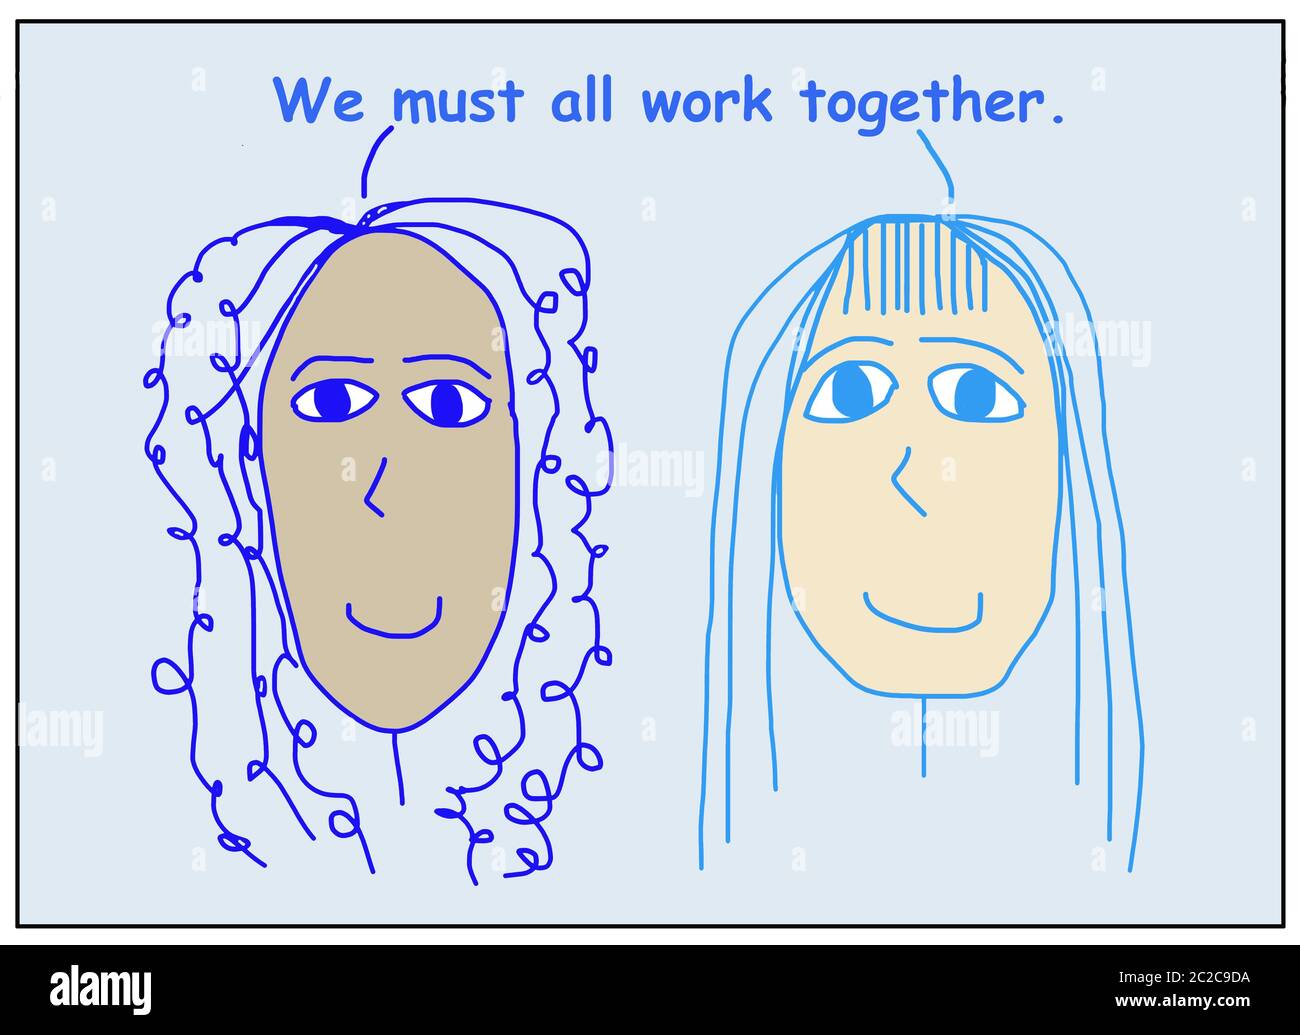 Farbige Karikatur von zwei lächelnden, schönen, ethnisch verschiedenen Frauen, die sagen, wir müssen alle zusammenarbeiten. Stockfoto